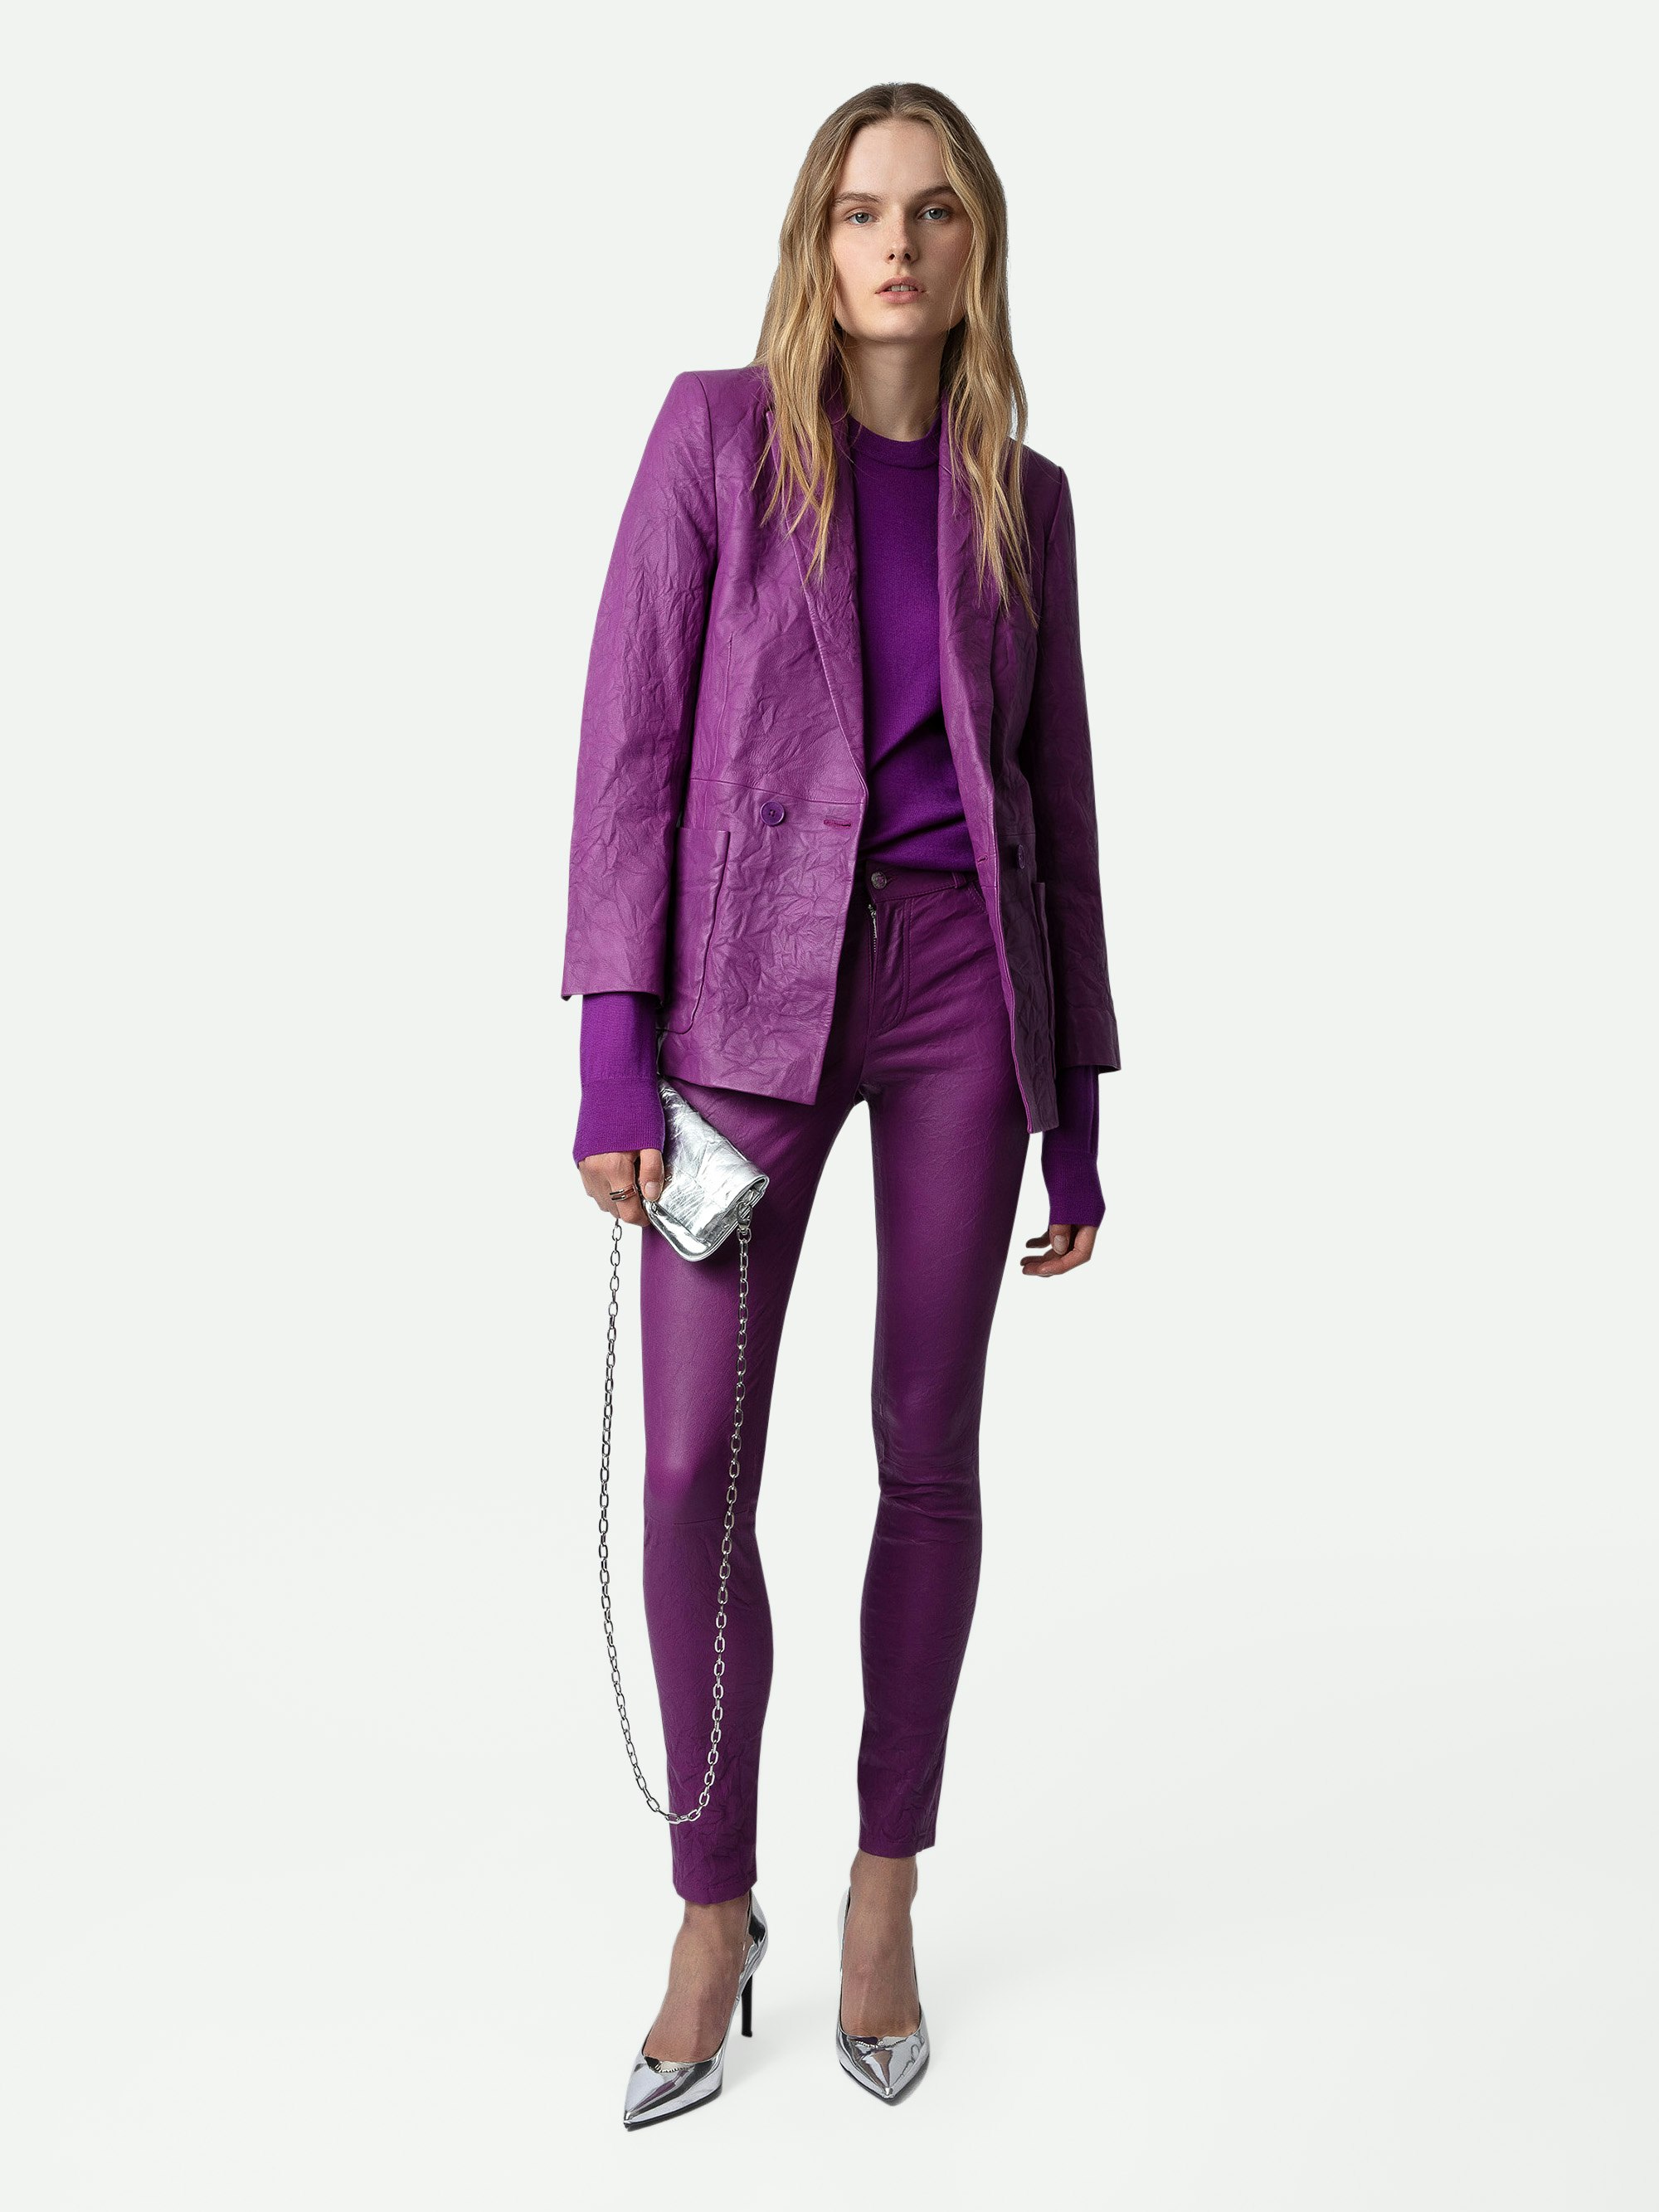 Pantalón de Piel Arrugada Phlame - Pantalón violeta de piel arrugada con bolsillos.